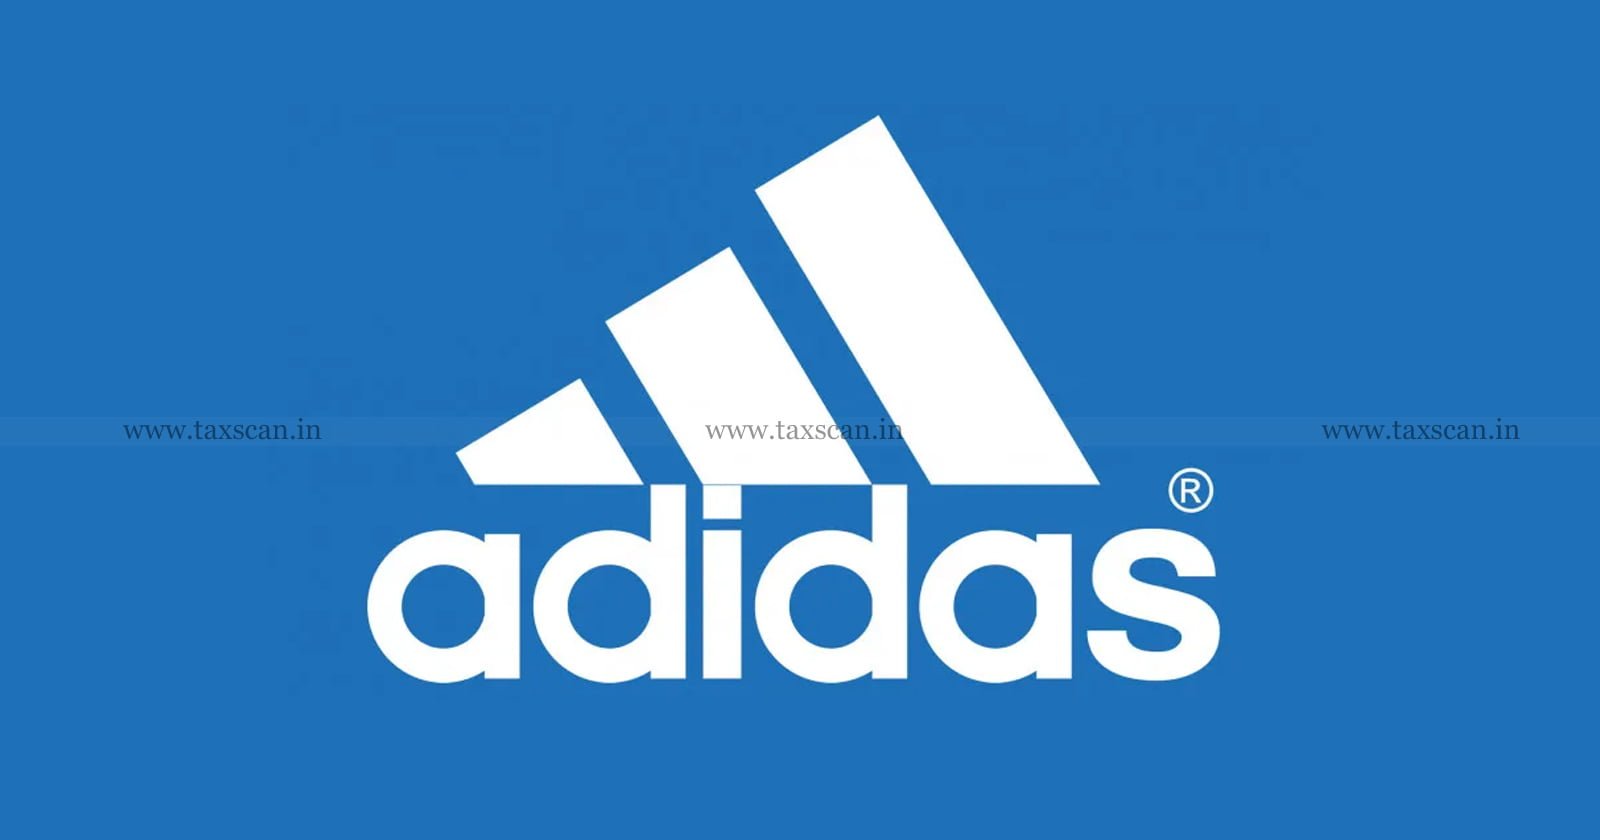 CA - Vacancy - in - Adidas - TAXSCAN